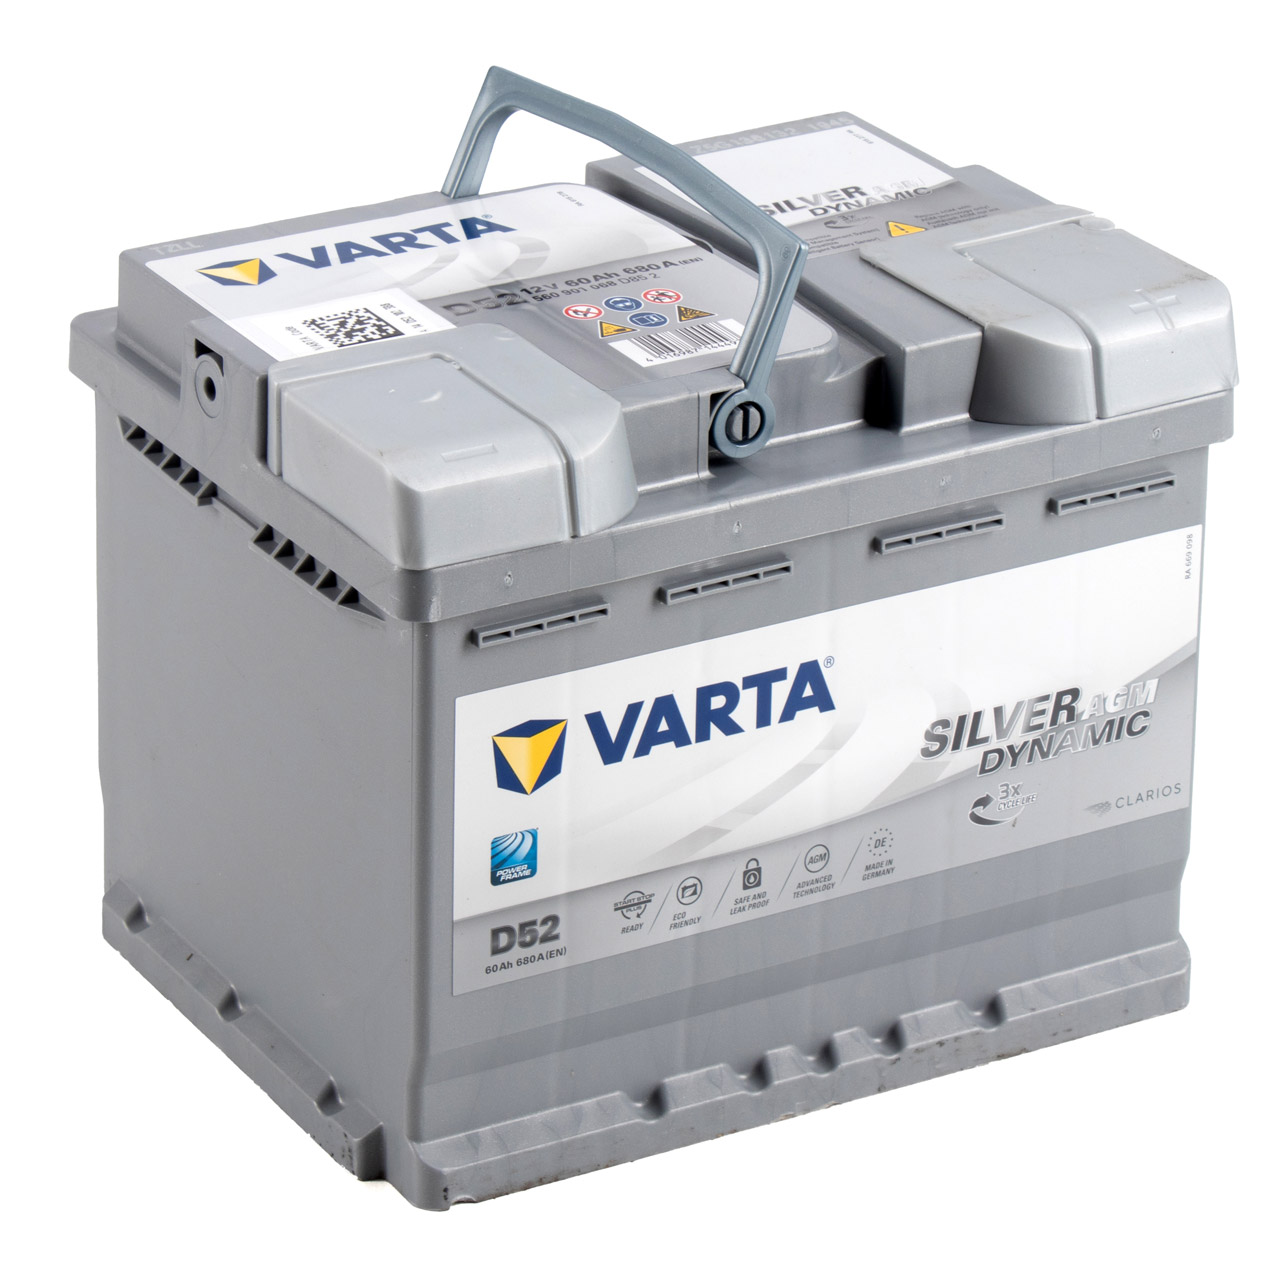 VARTA Starterbatterien / Autobatterien - 560901068D852 - ws